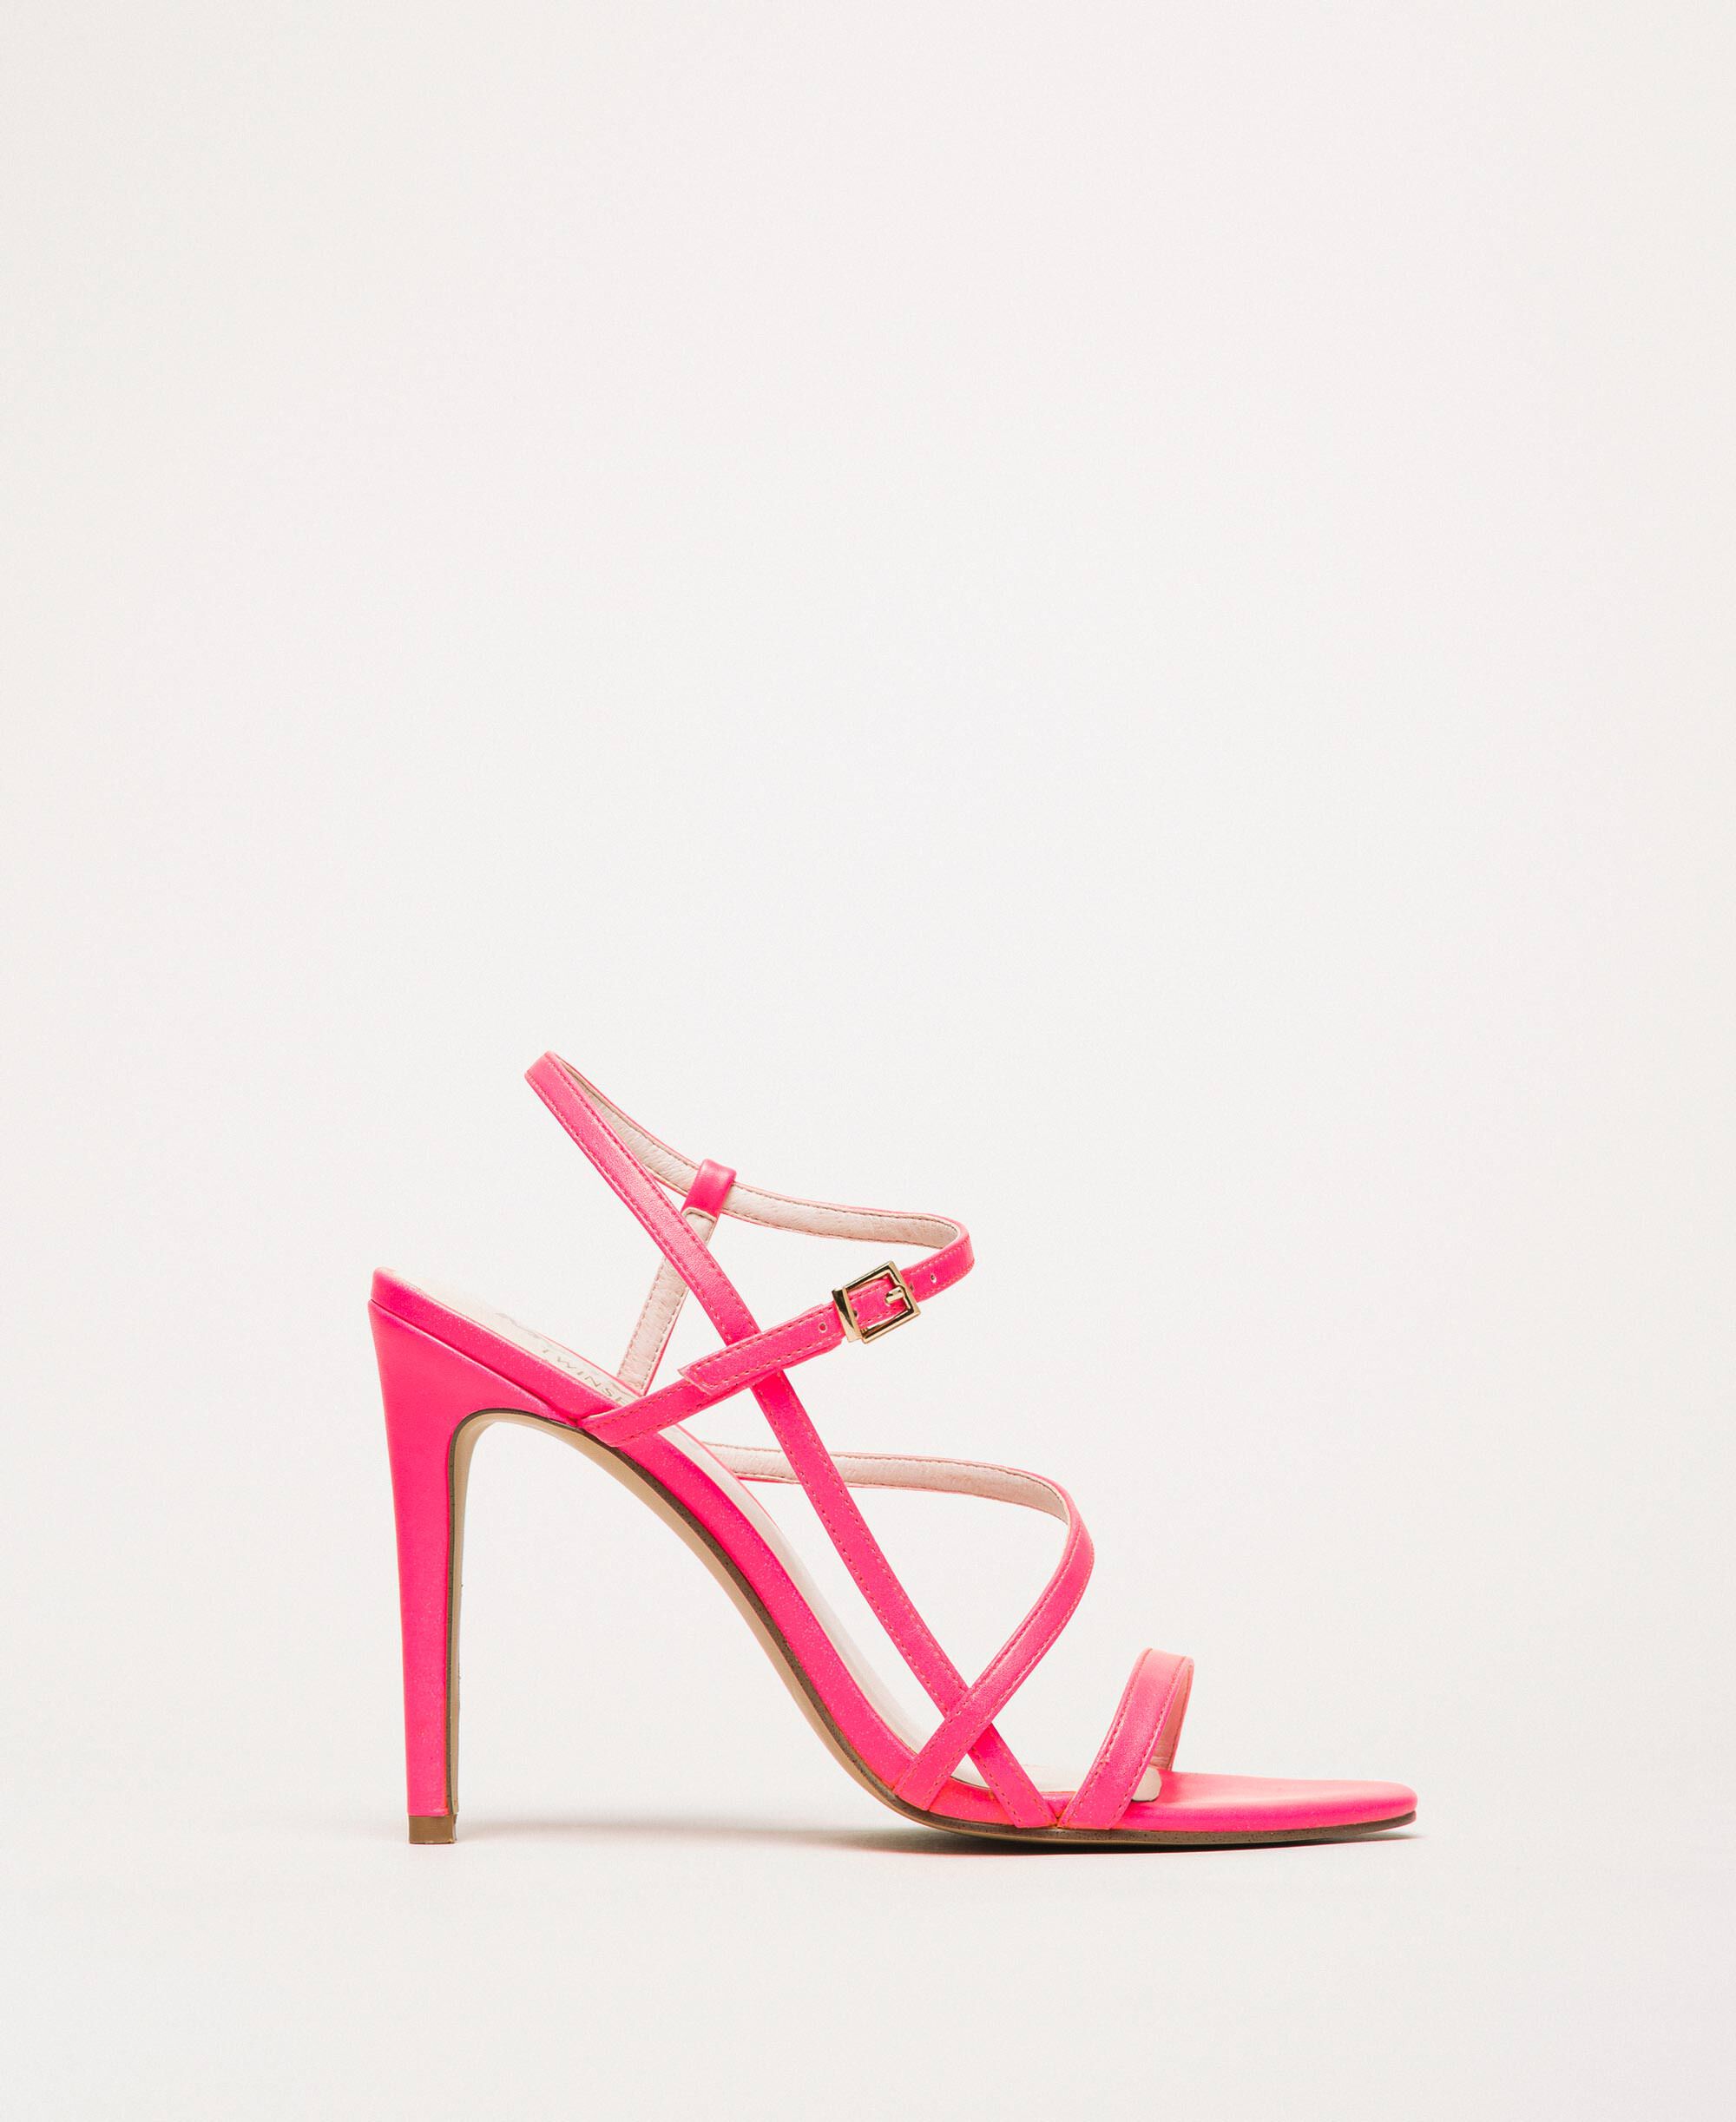 Sandalias de Twinset de color Rosa Mujer Zapatos de Tacones de Sandalias con cuña 